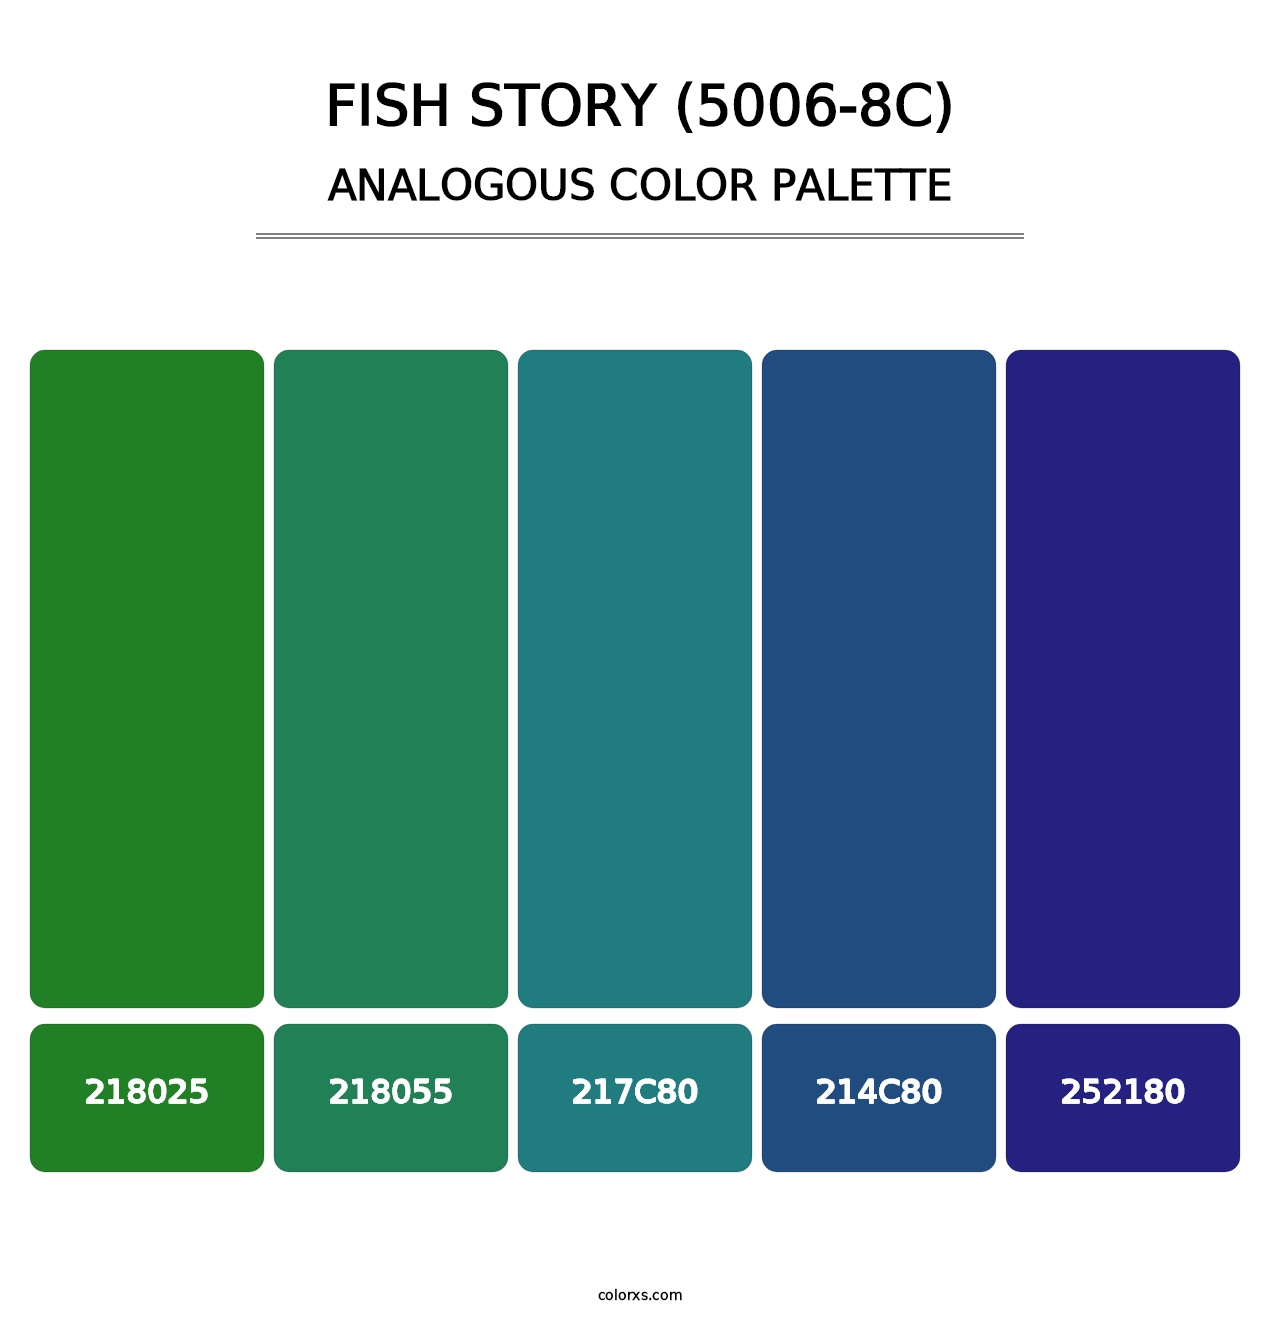 Fish Story (5006-8C) - Analogous Color Palette